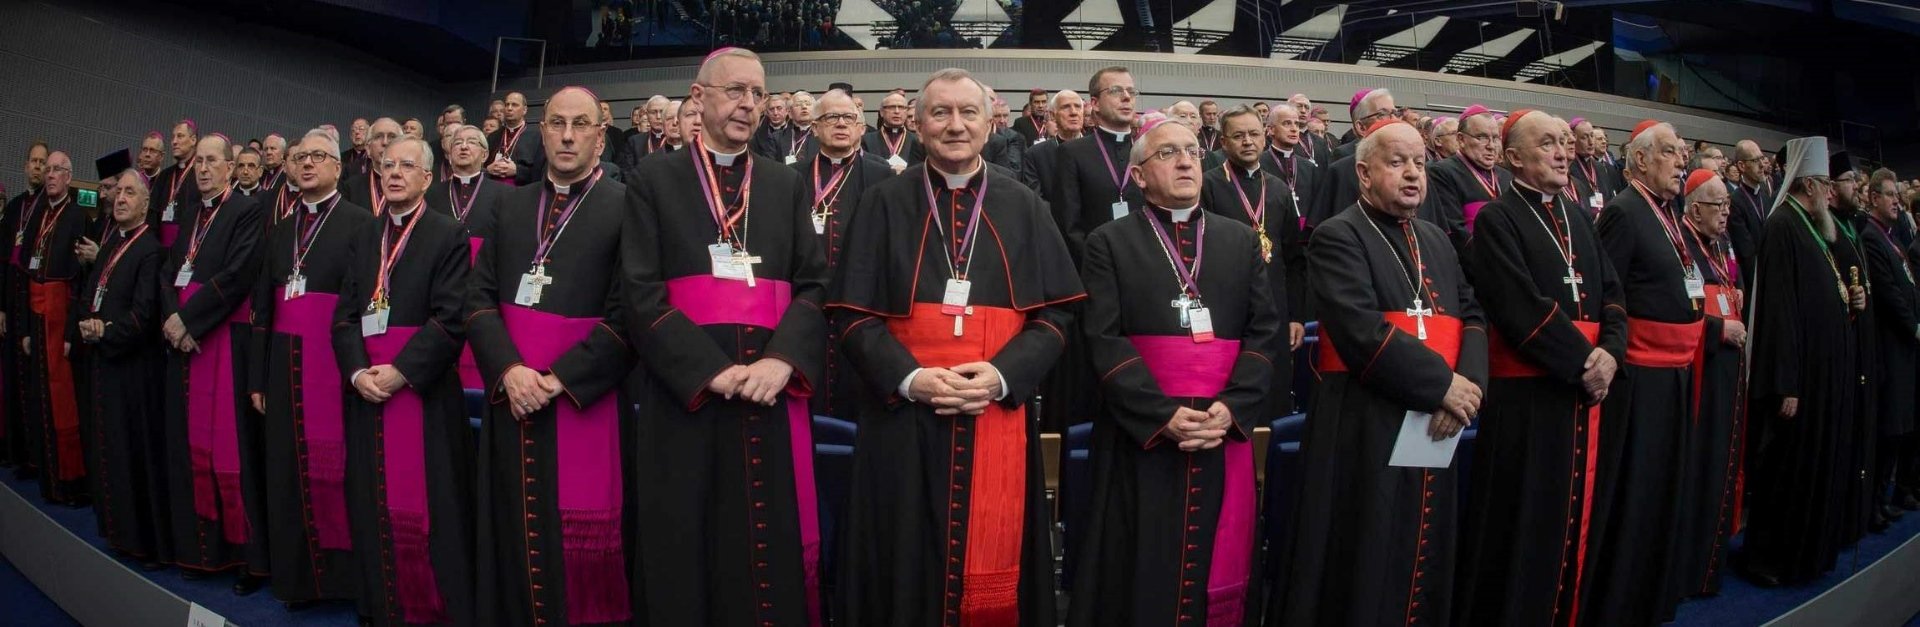 Pologne – Les évêques s’opposent au gouvernement polonais